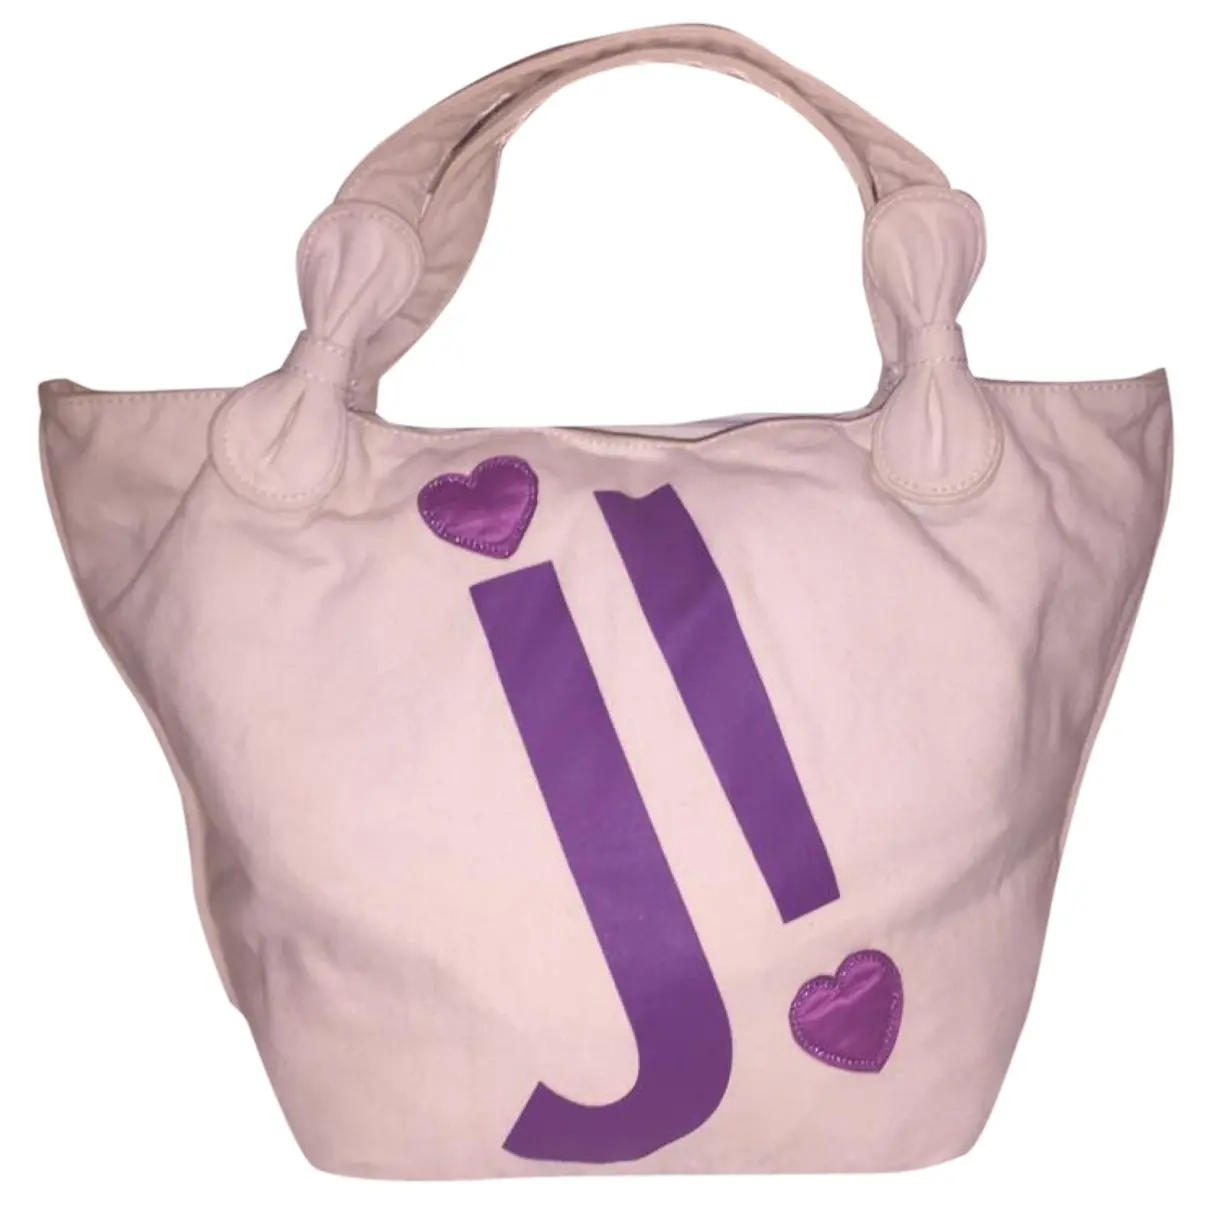 Handbag Juicy Couture